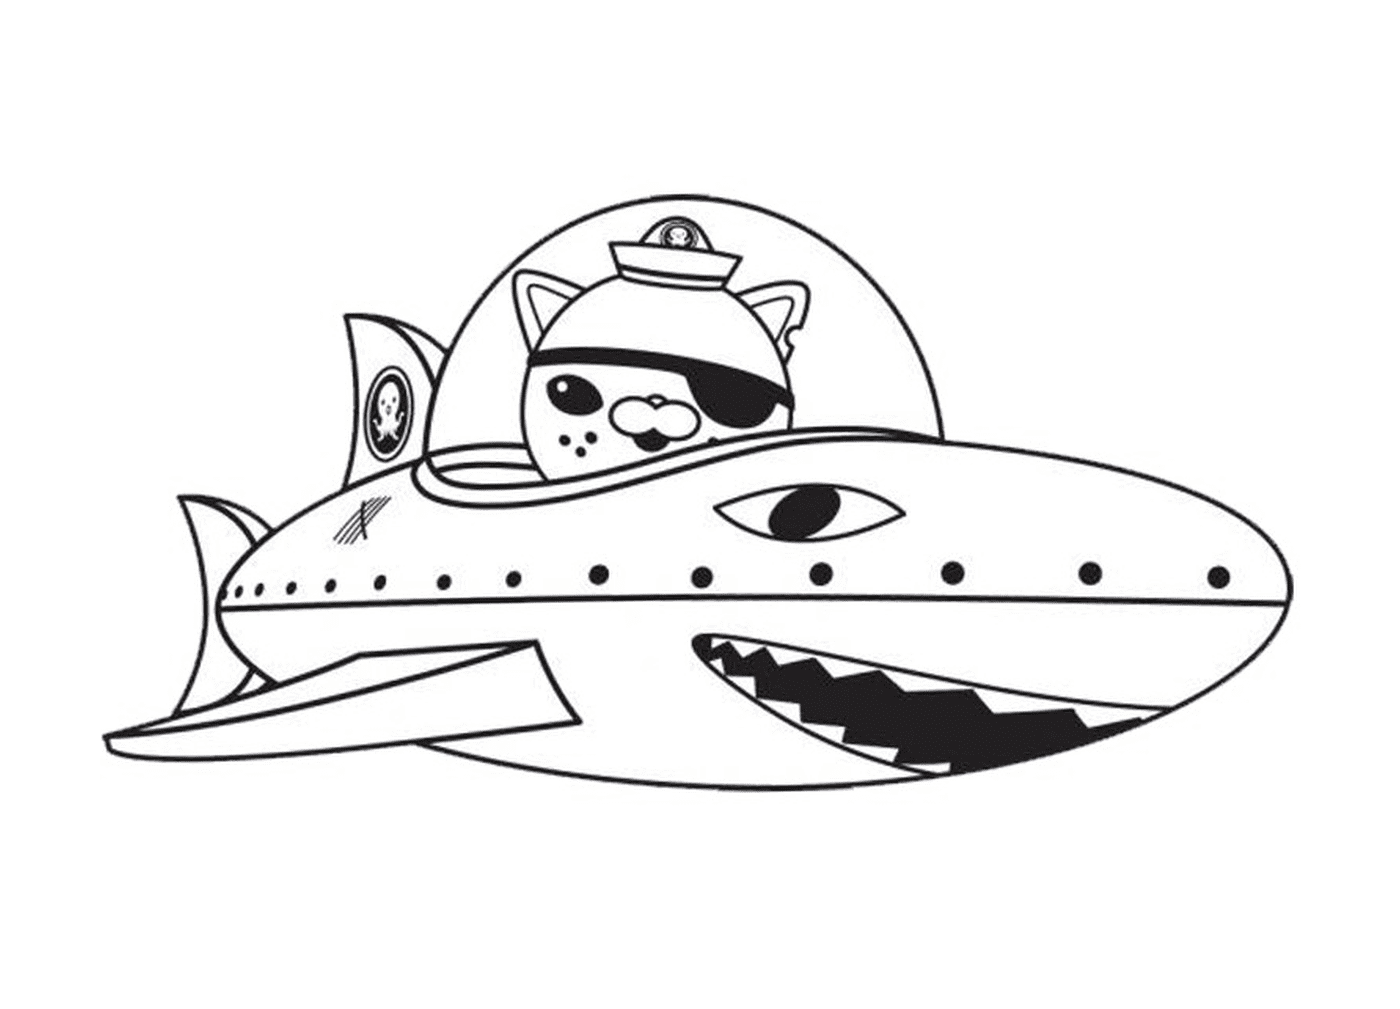  Gup-B con un tiburón, una aventura submarina 